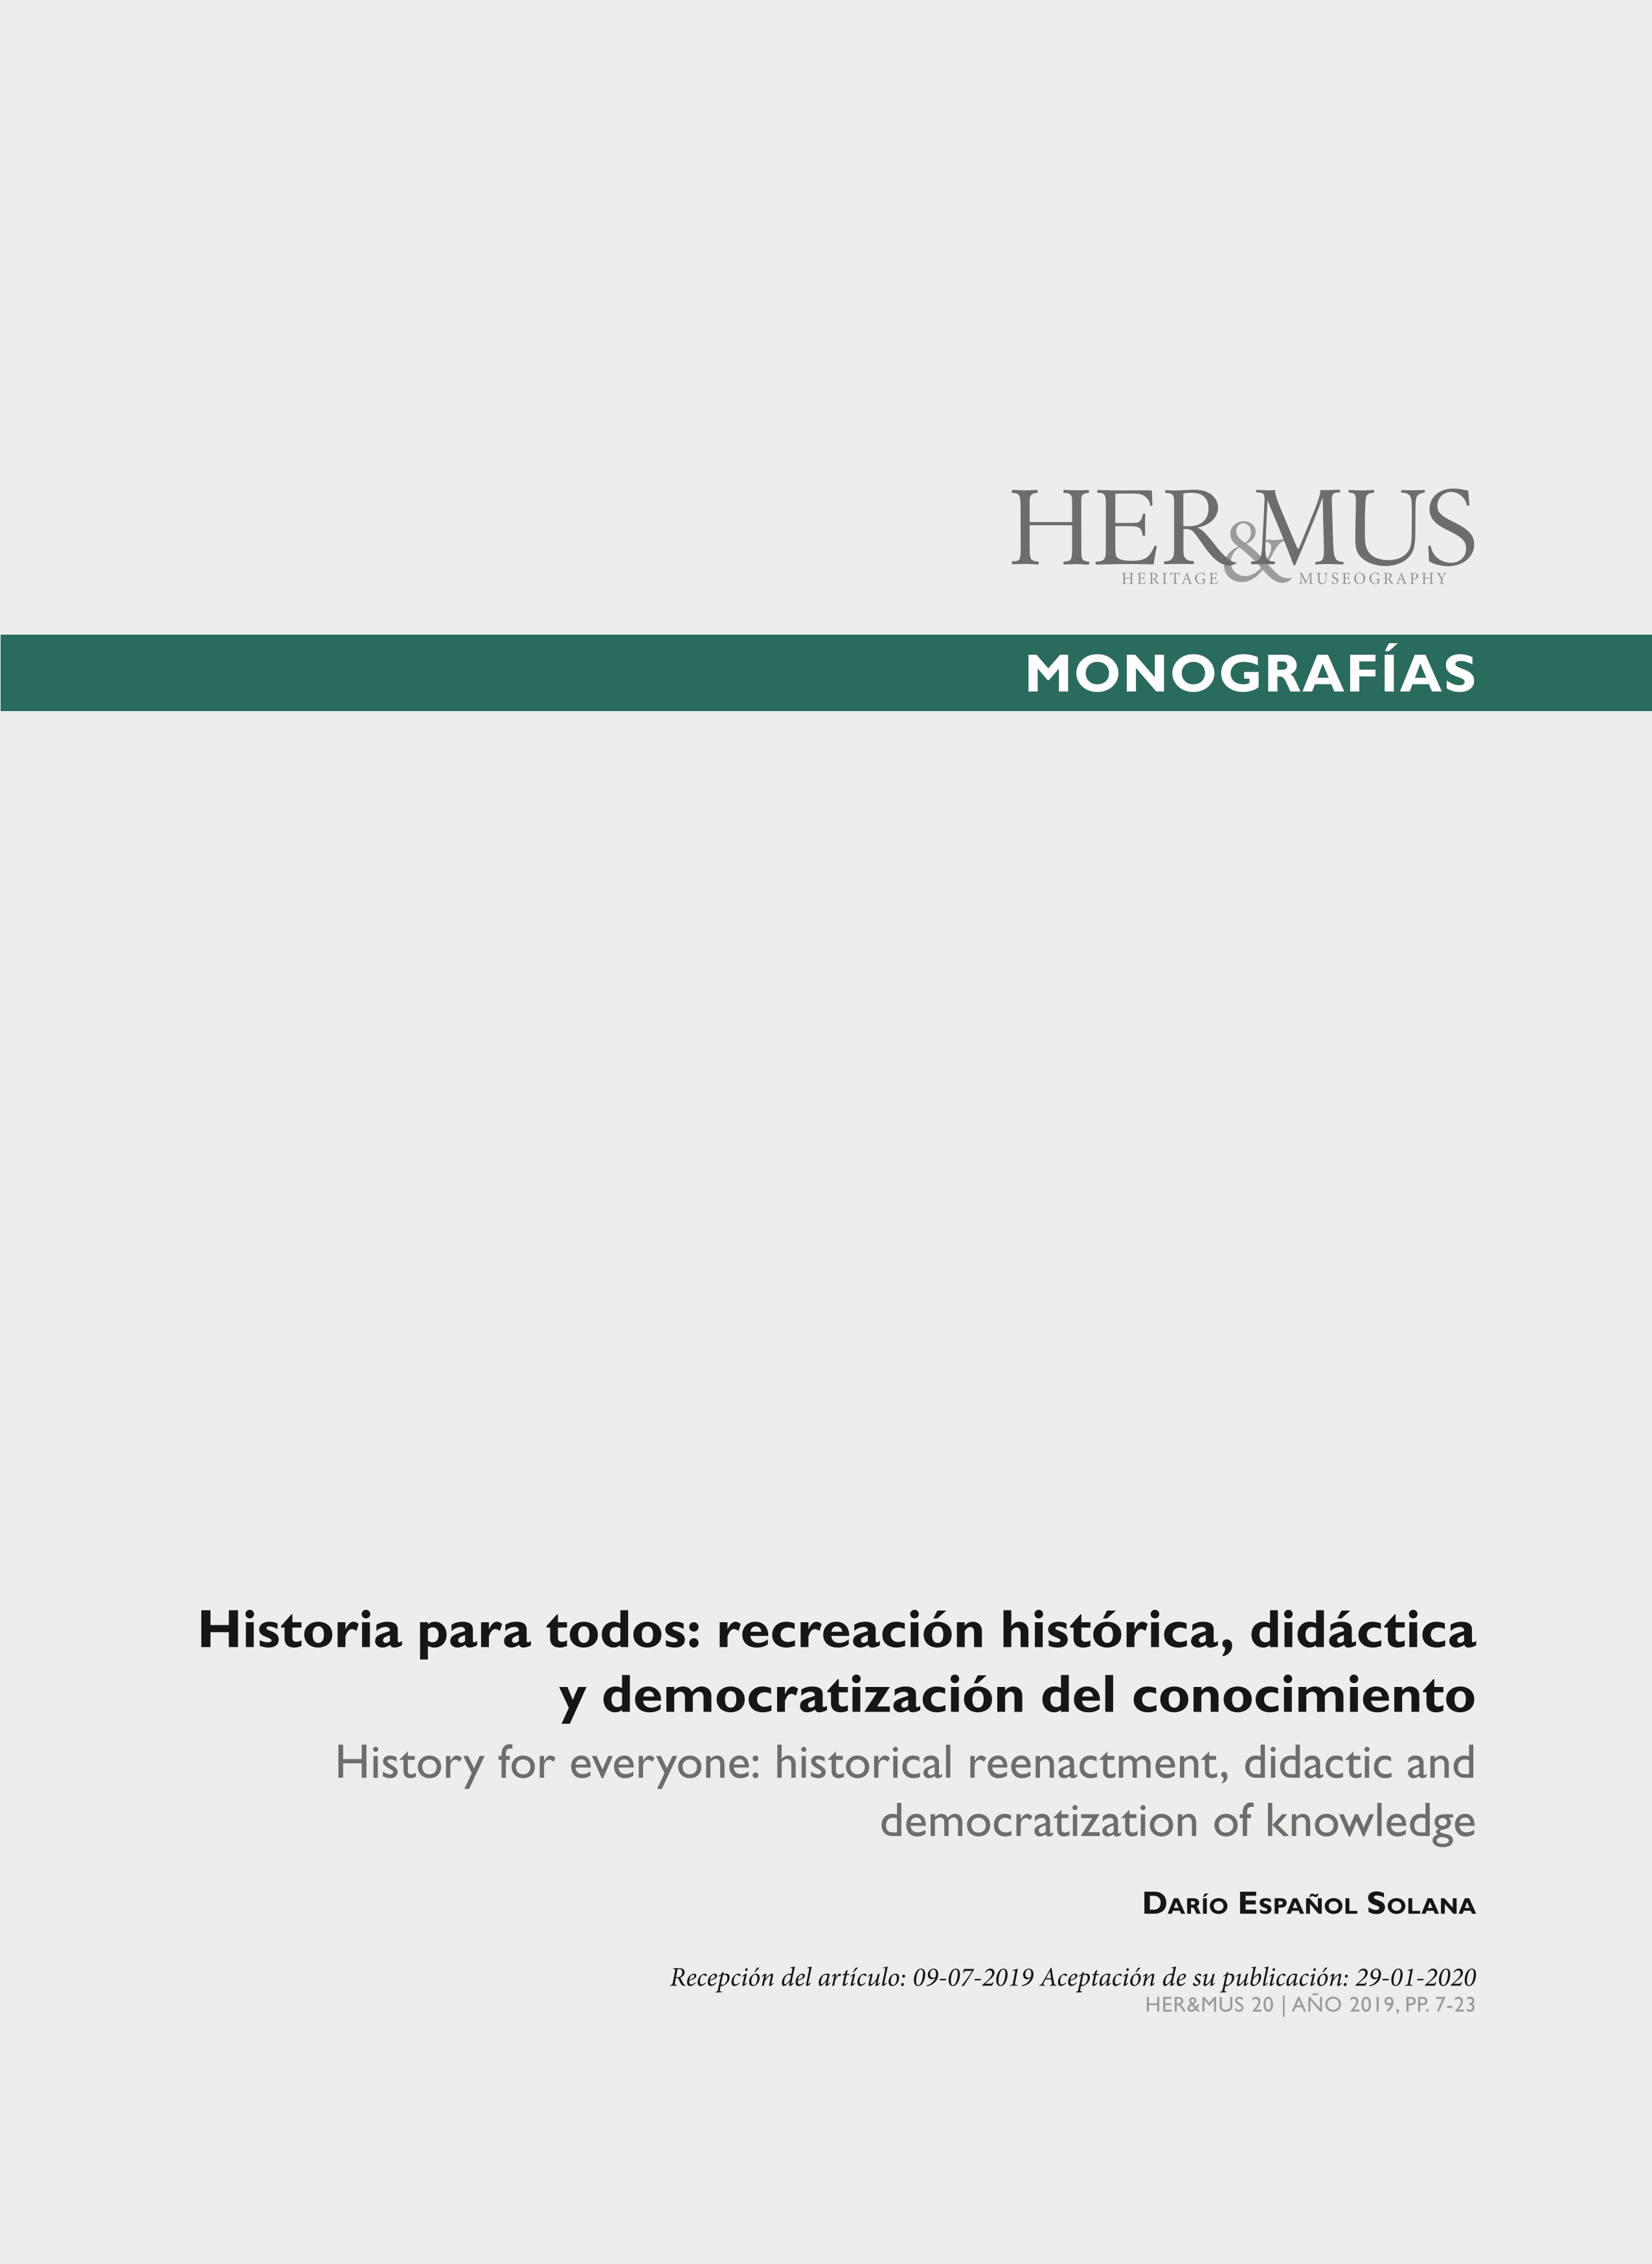 Historia para todos: recreación histórica, didáctica y democratización del conocimiento